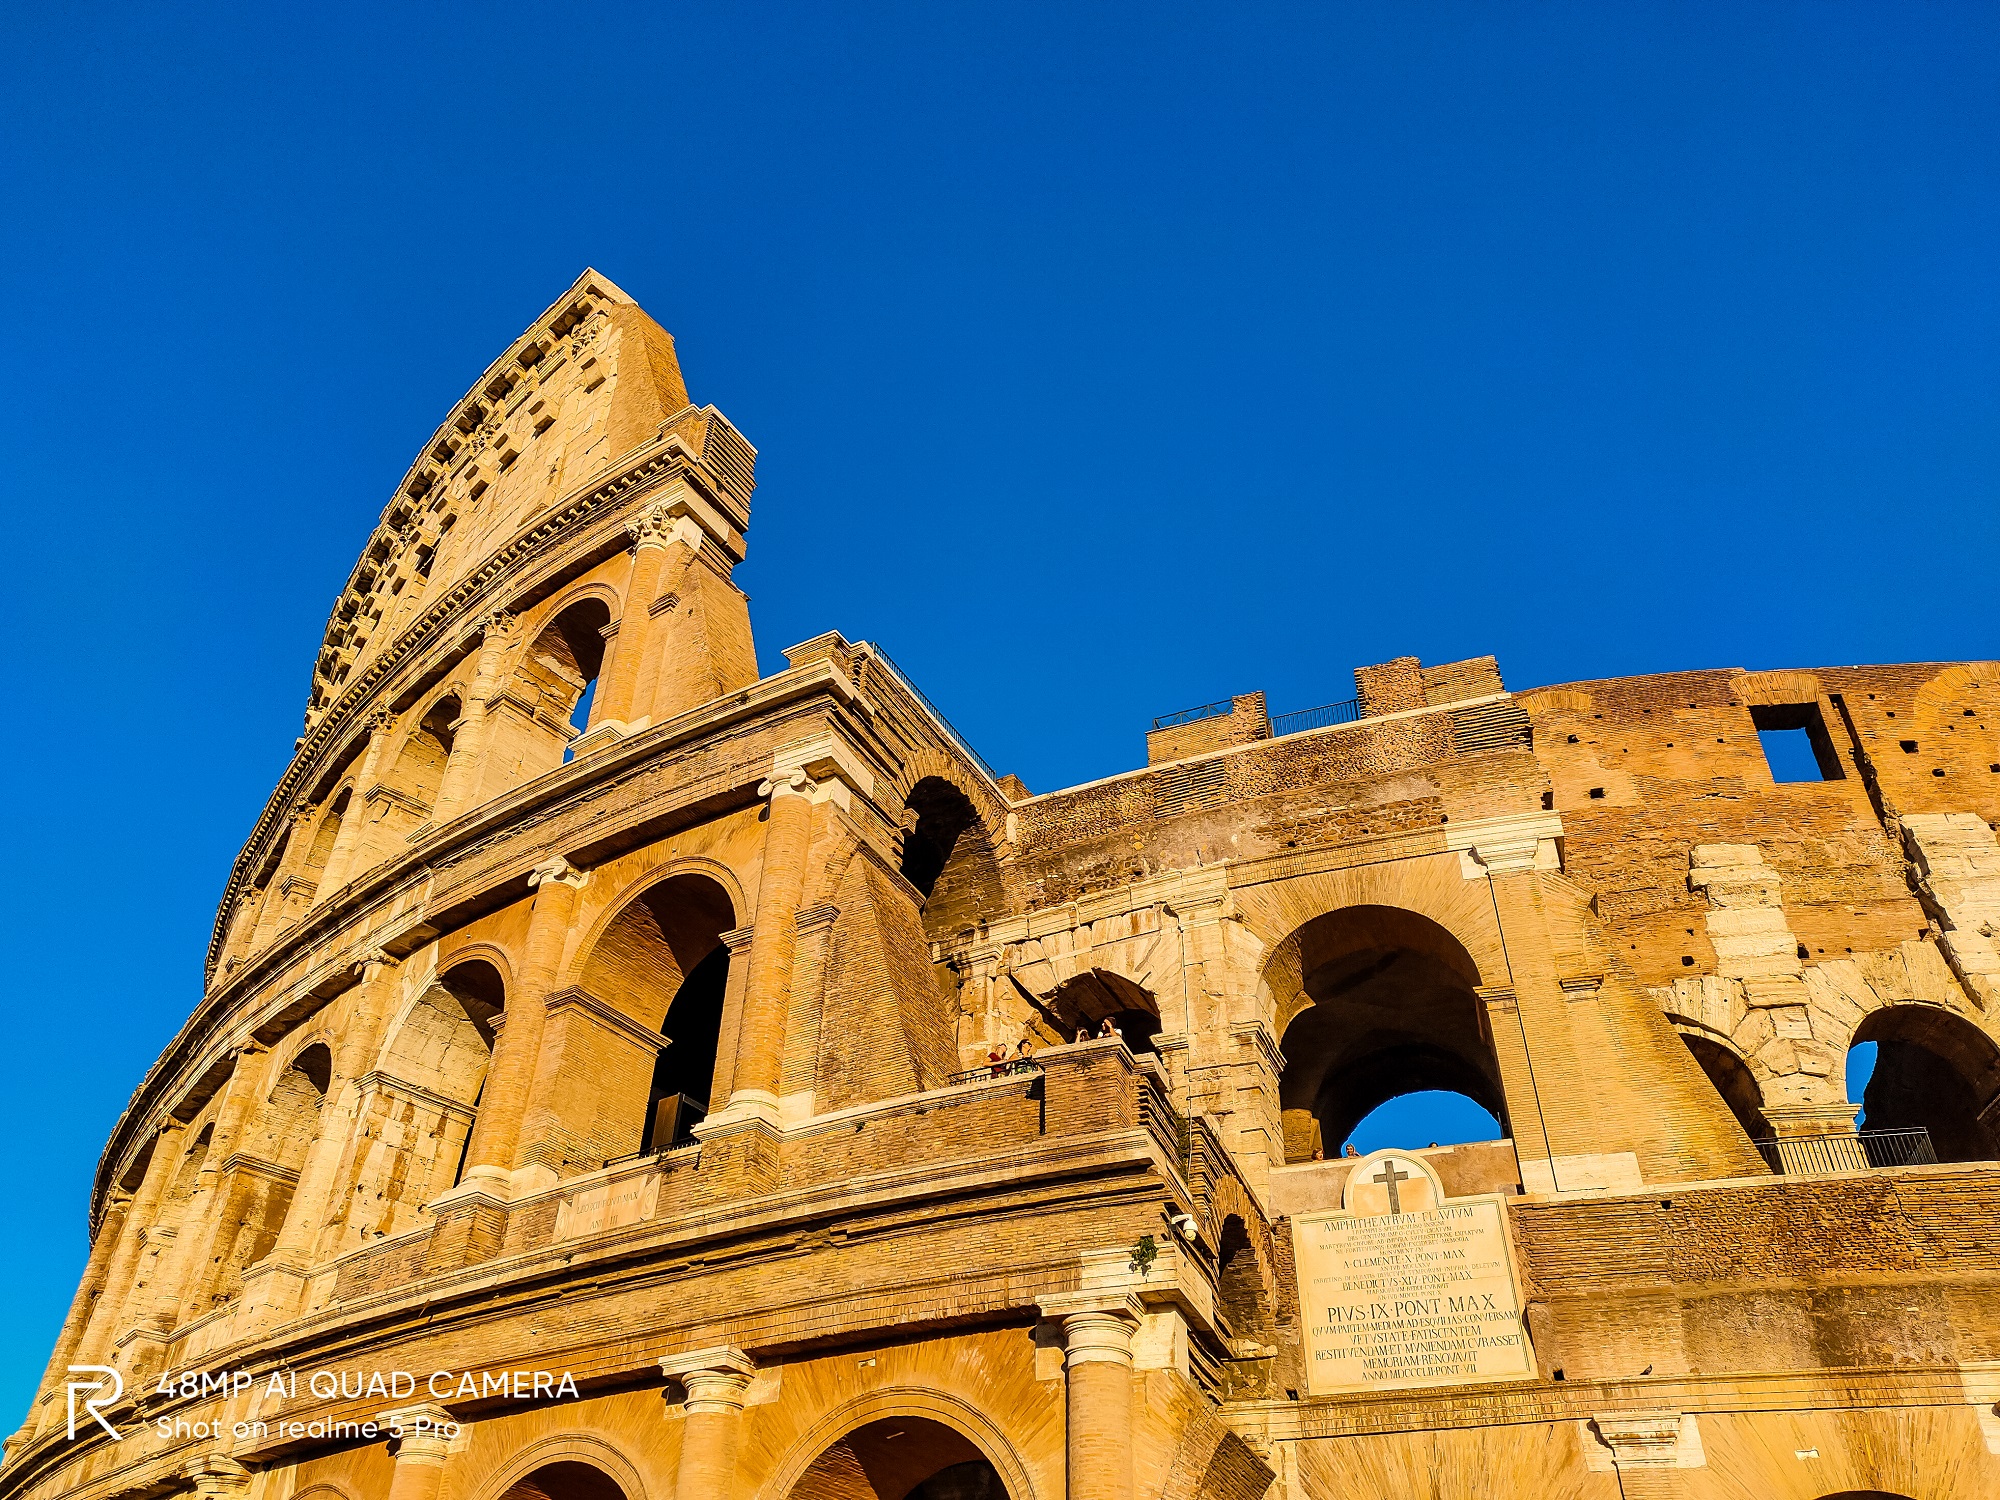 Theo thời gian, đấu trường La Mã vẫn mang lại nét đẹp trường tồn.